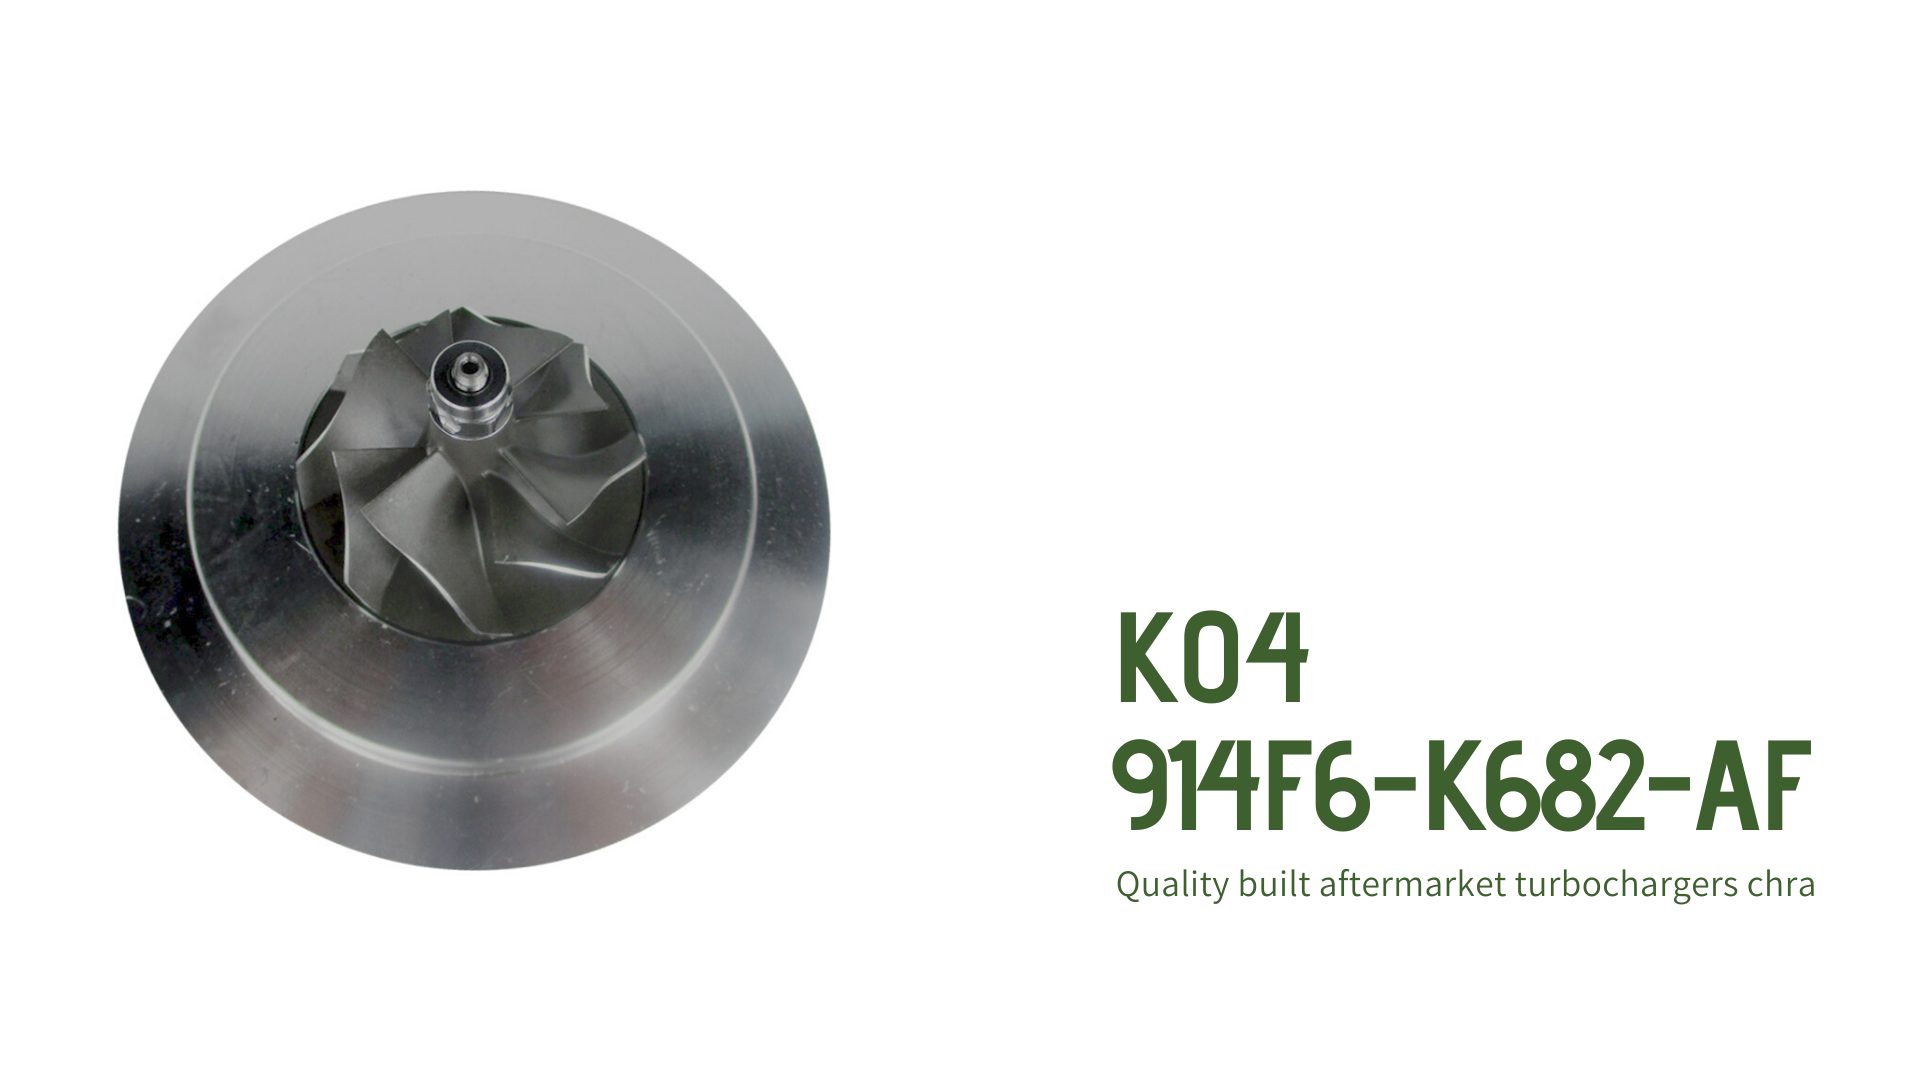 53049880001 Cartridge For K04 914F6-K682-AF Turbocharger